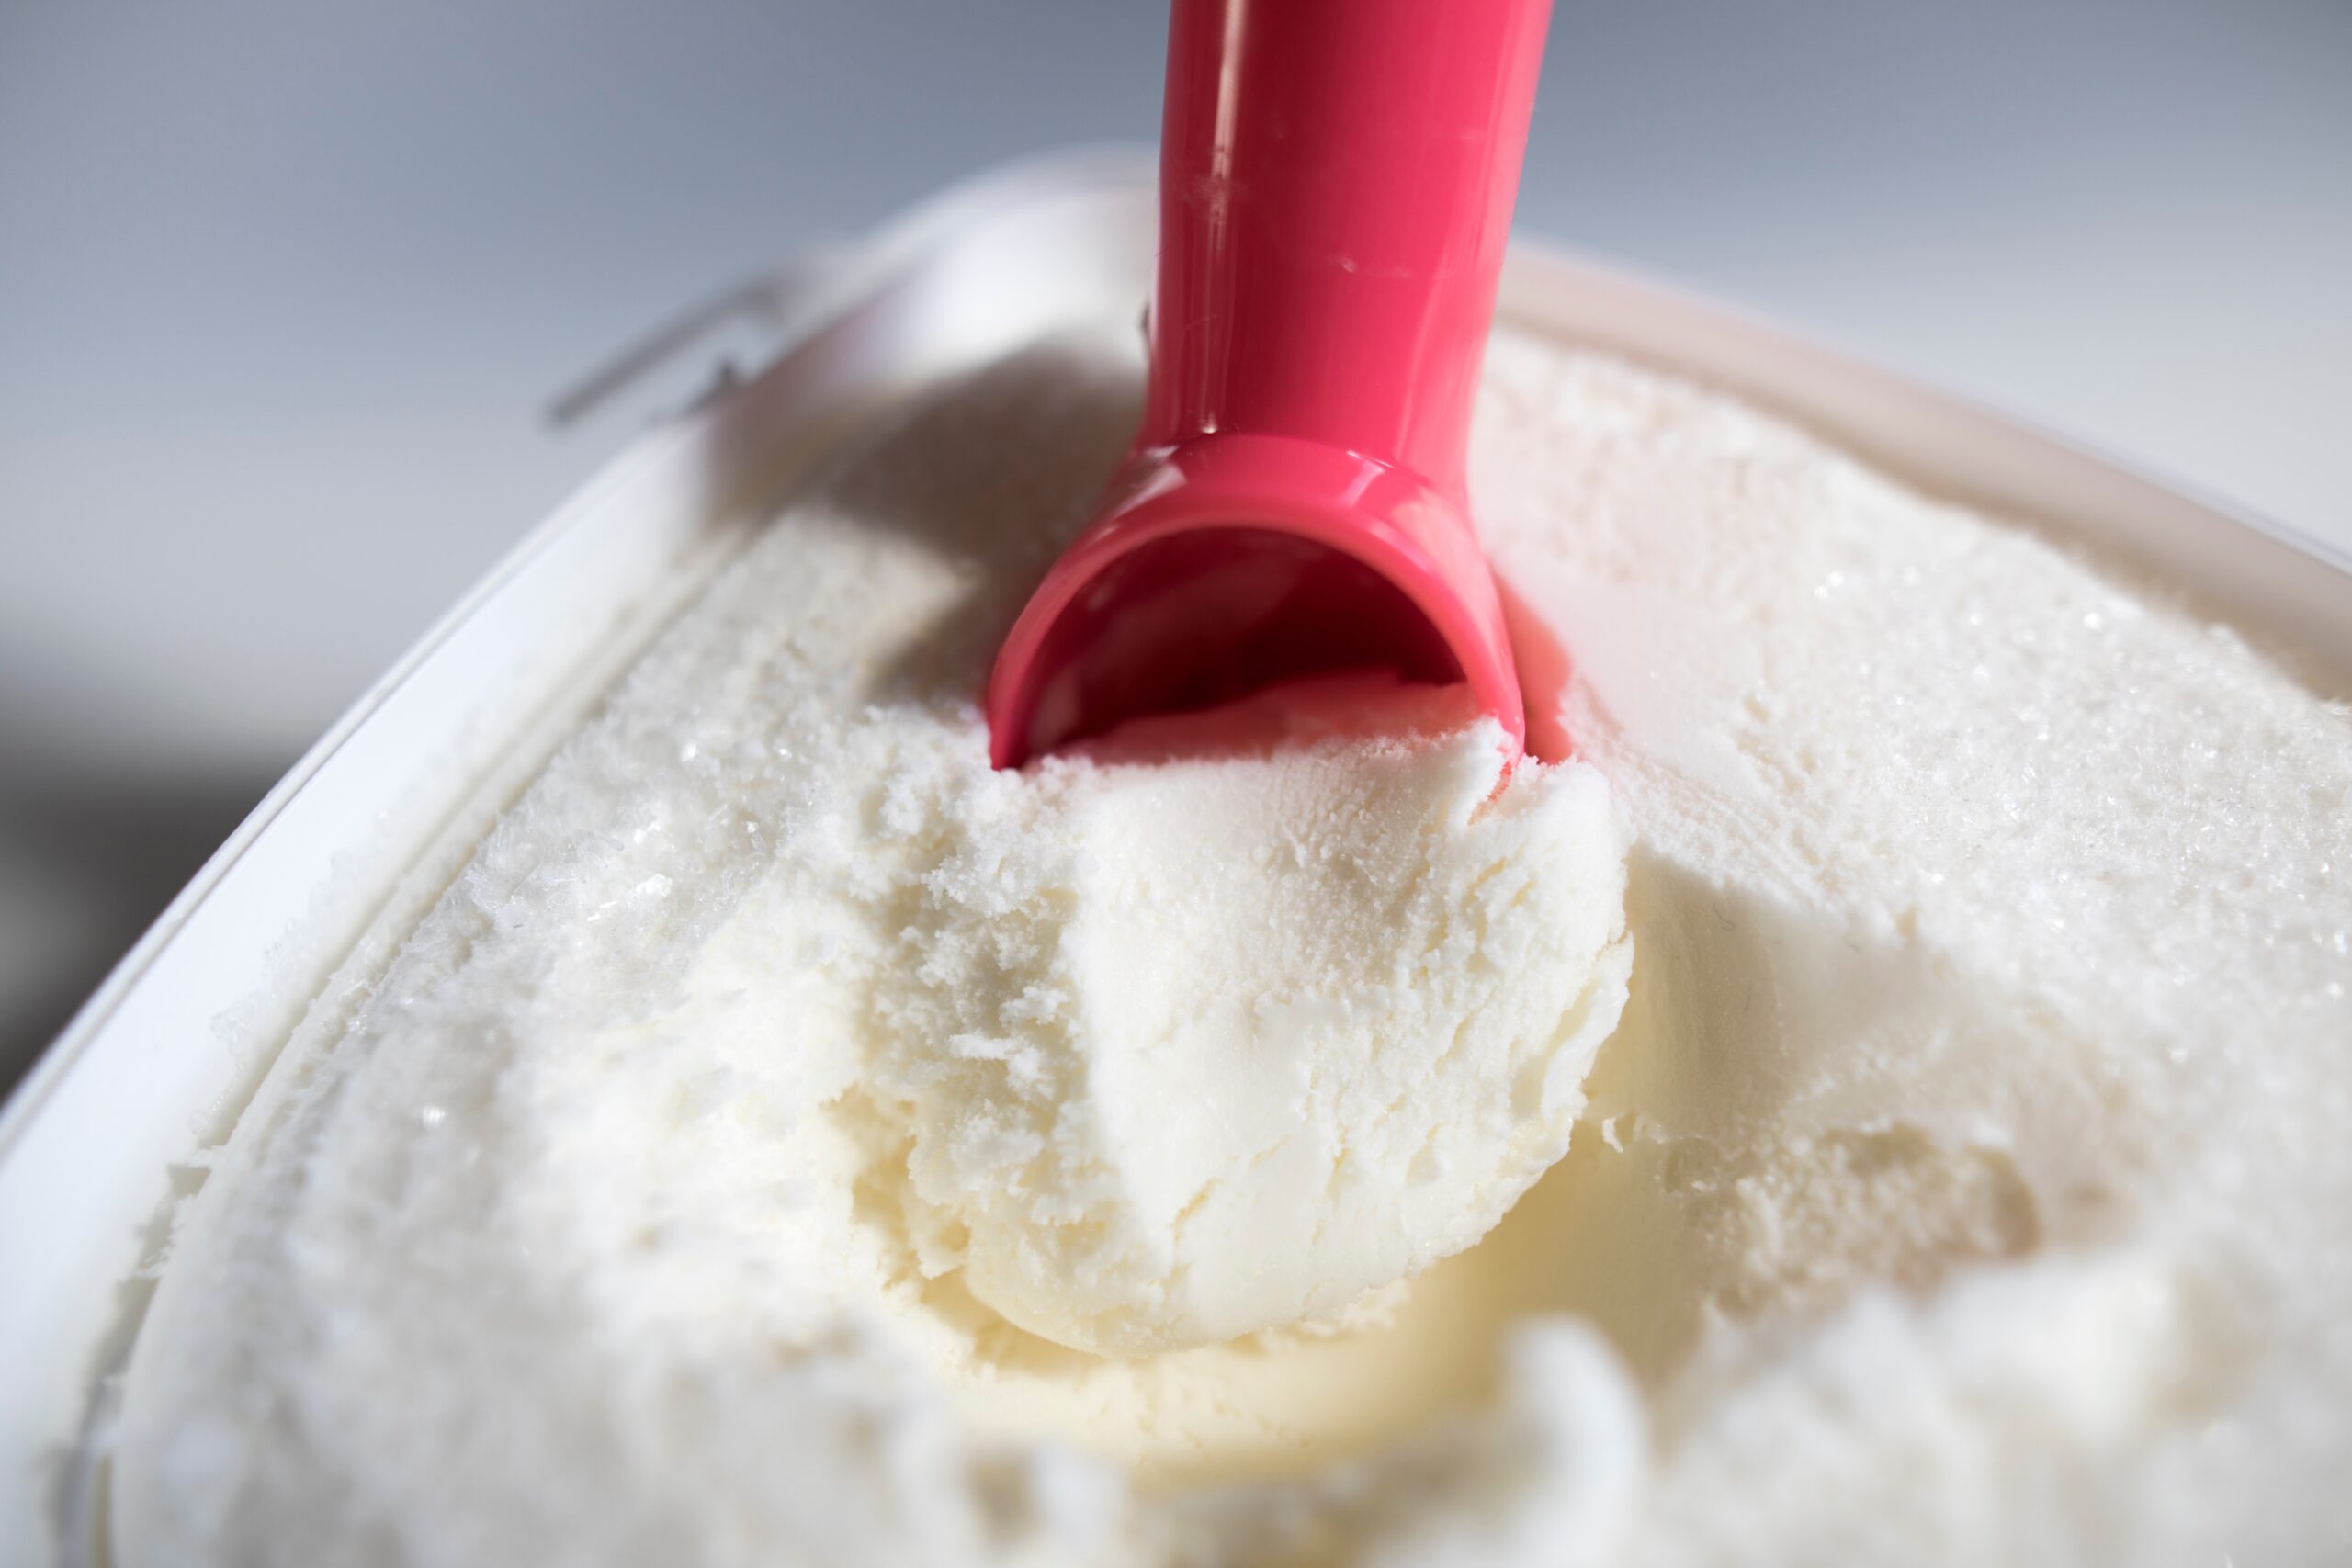 close up of red ice cream scoop scooping vanilla ice cream